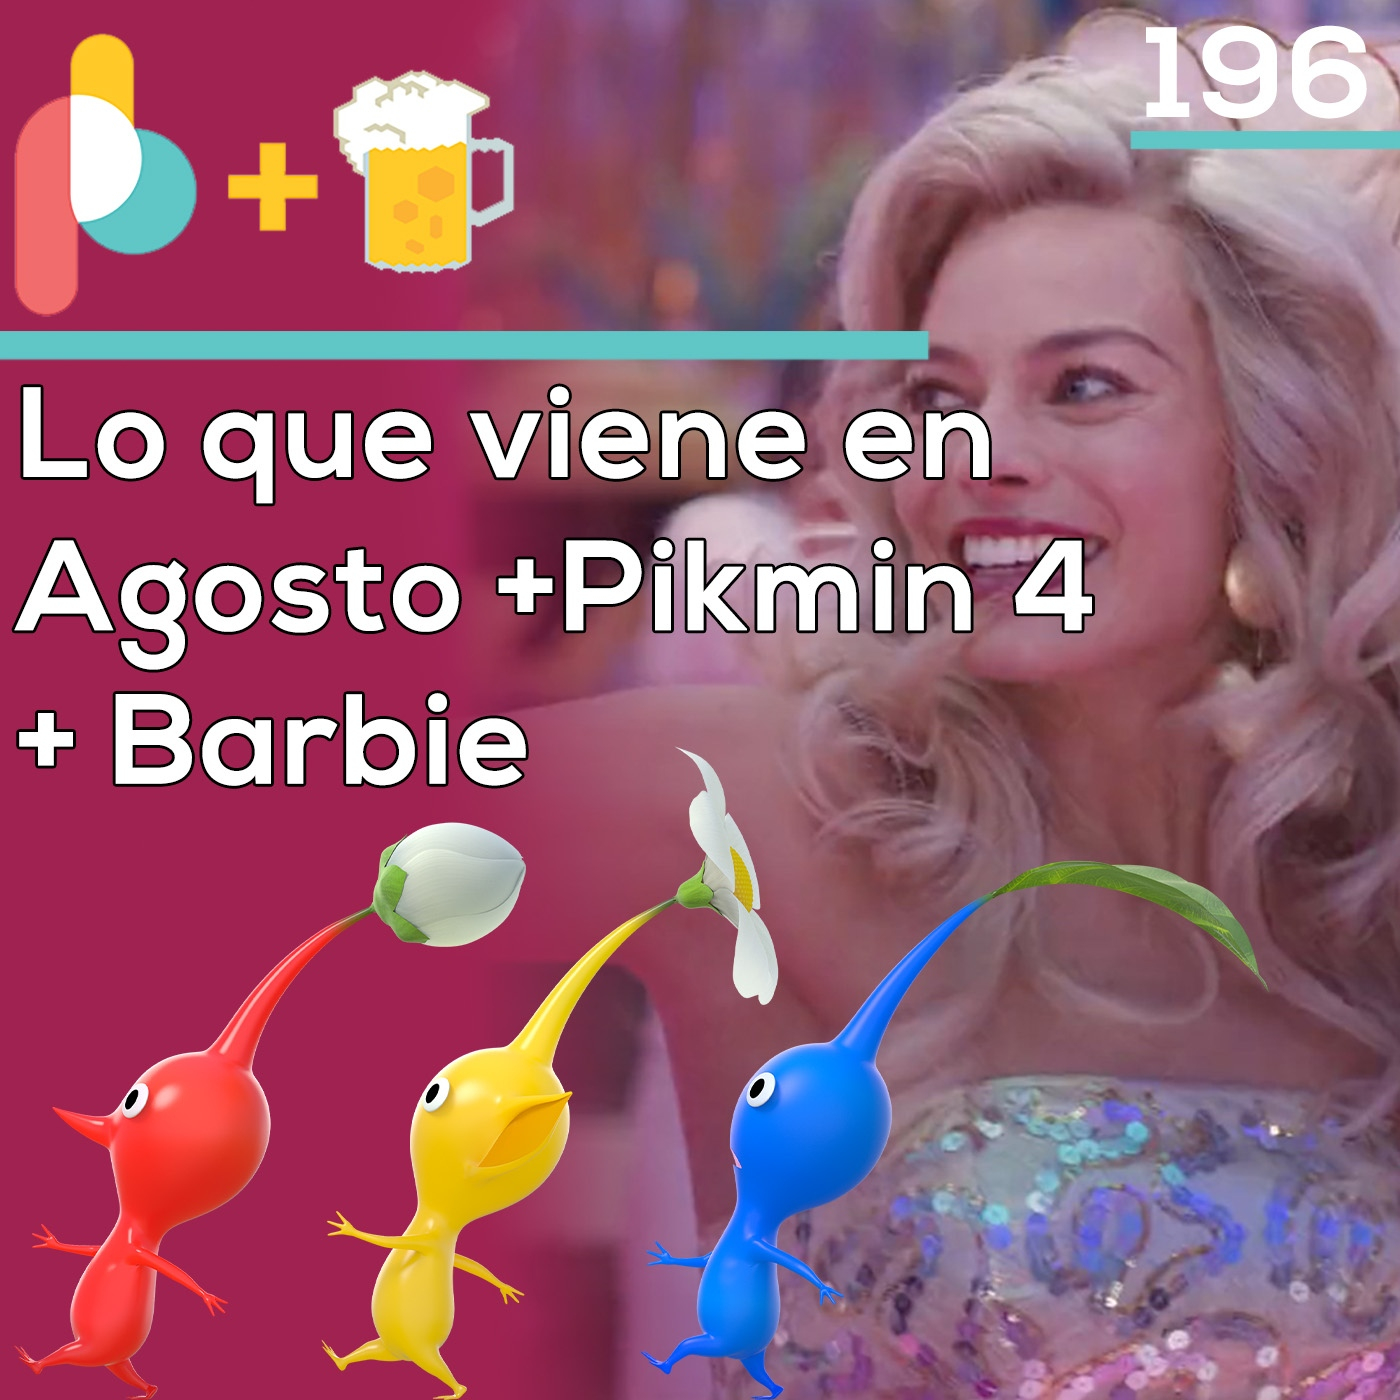 Pixelbits con cerveza 196: Lanzamientos de Agosto 2023 + Pikmin 4 + Película Barbie